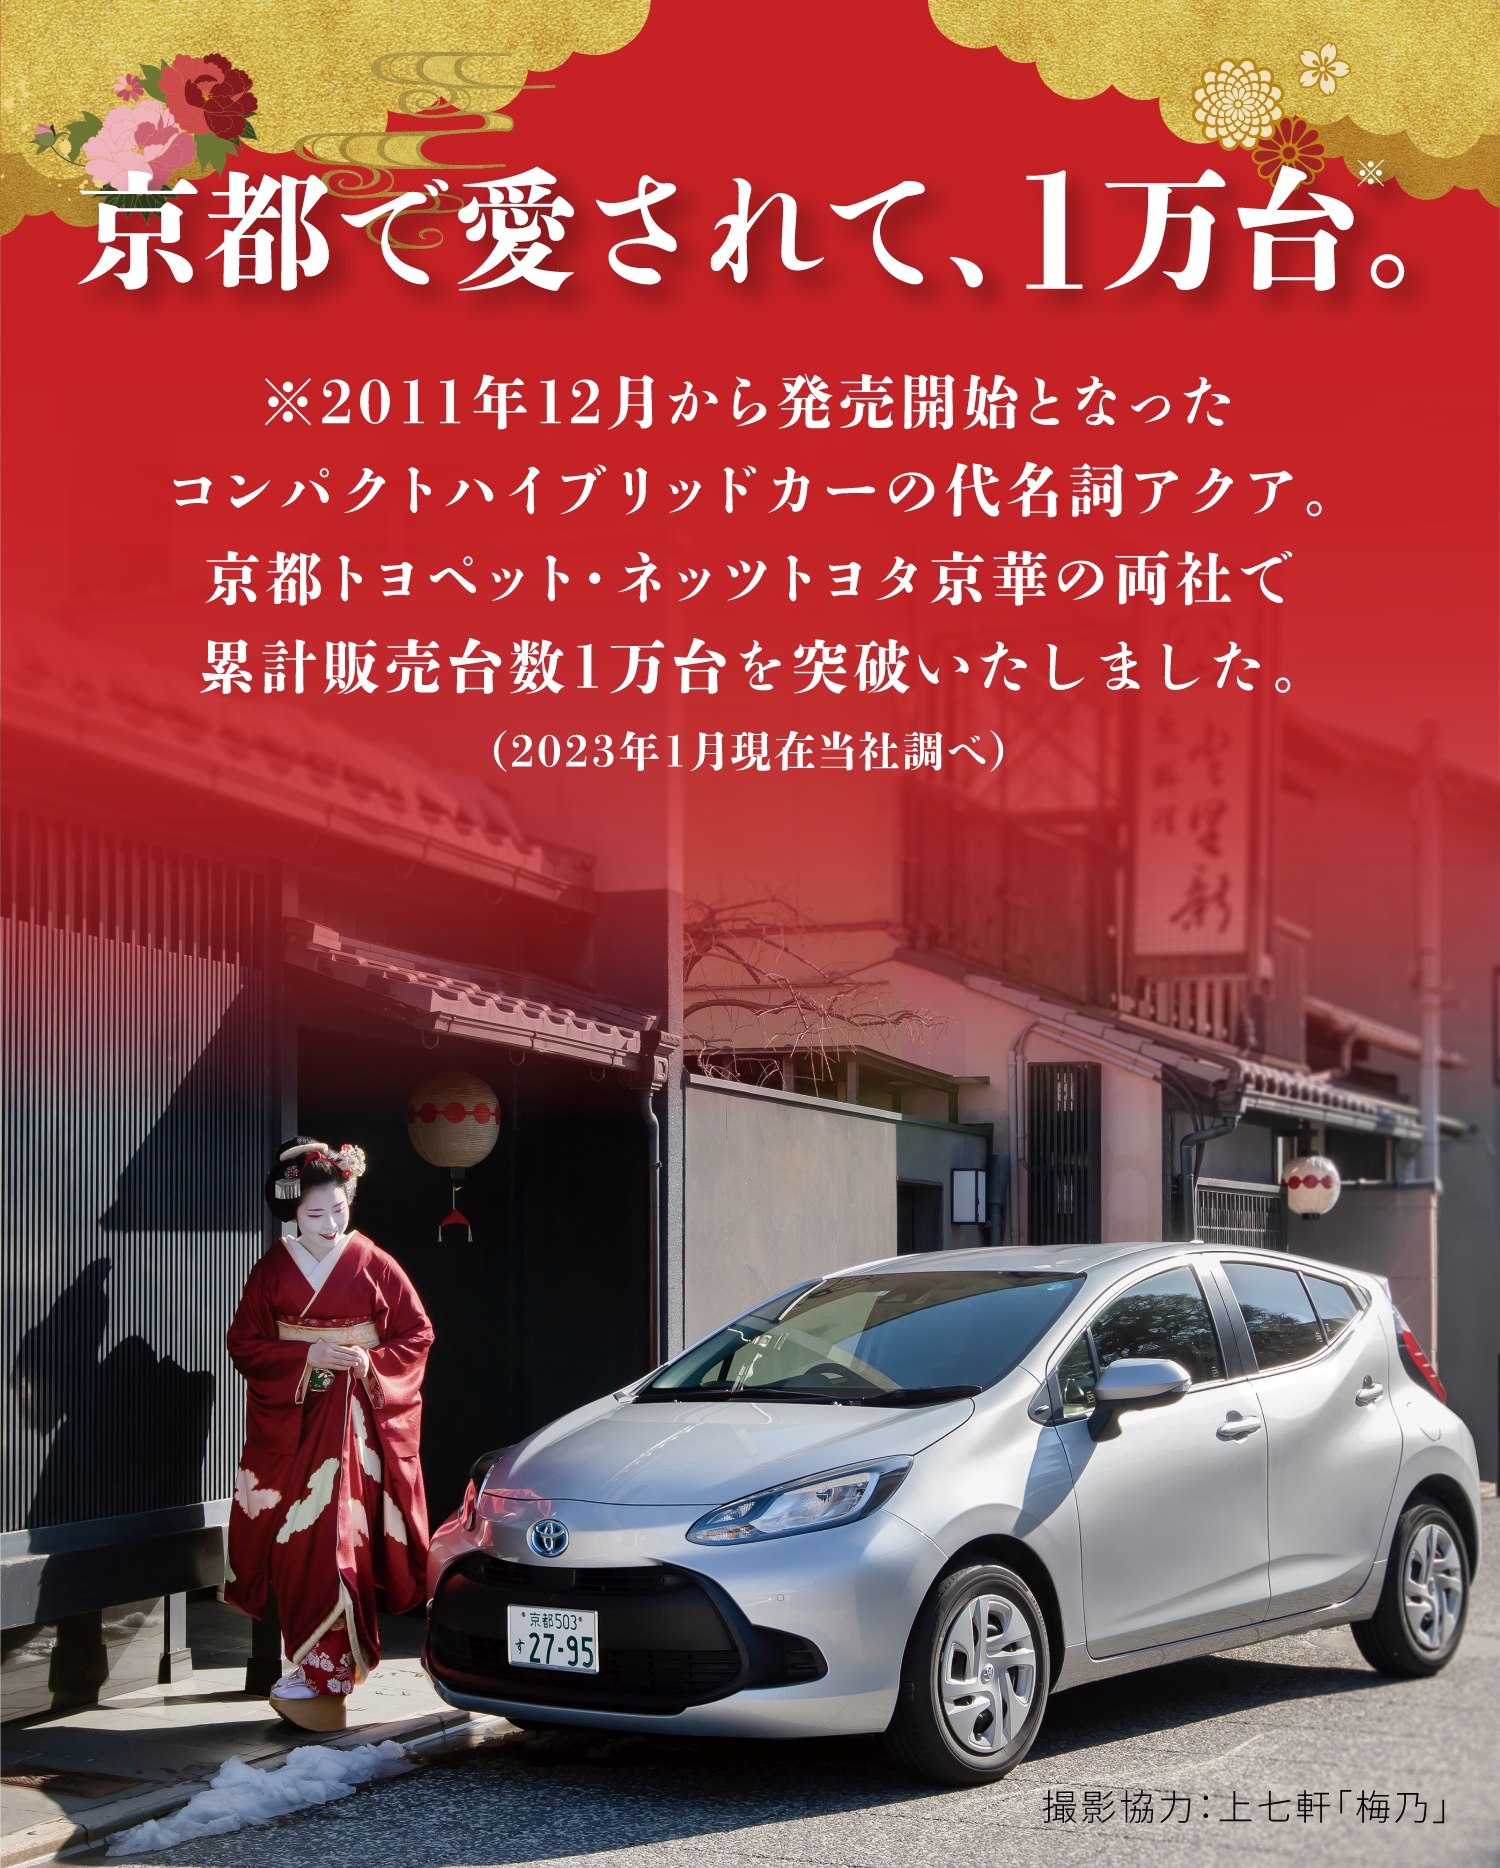 京都で愛されて、1万台。2011年12月から販売開始となったコンパクトハイブリットカーの代名詞アクア。京都トヨペット・ネッツトヨタ京華の両社で累計販売数1万台を突破いたしました。